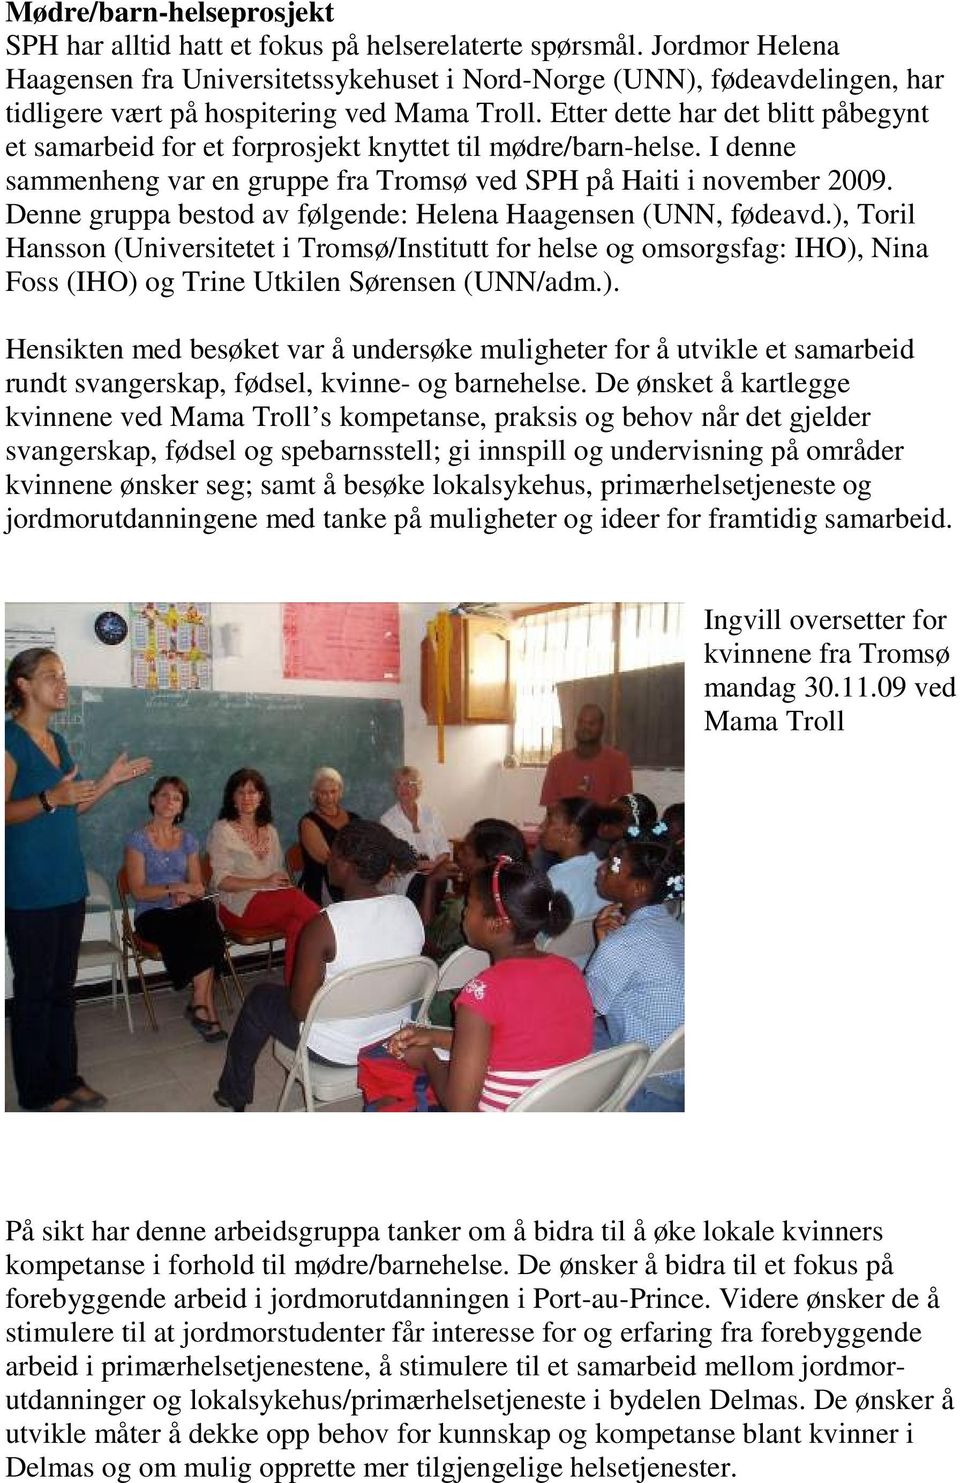 Etter dette har det blitt påbegynt et samarbeid for et forprosjekt knyttet til mødre/barn-helse. I denne sammenheng var en gruppe fra Tromsø ved SPH på Haiti i november 2009.